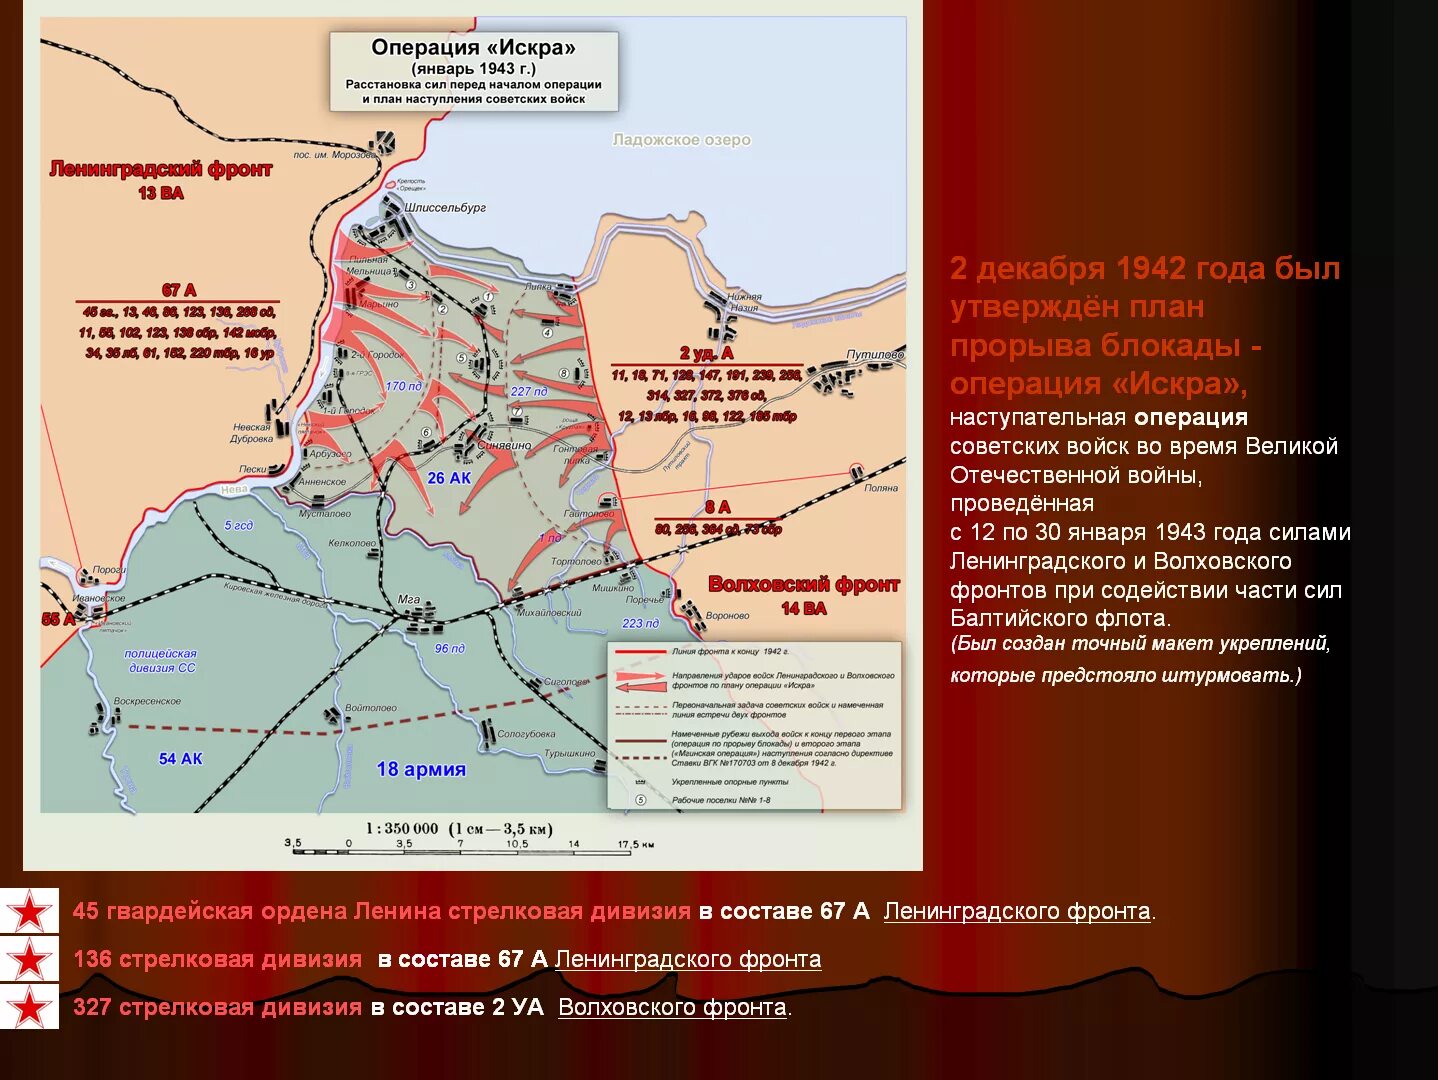 Прорыв блокады Ленинграда (12–30 января 1943). Карта прорыва блокады Ленинграда в 1943 году. Блокада ленинграда кодовое название операции